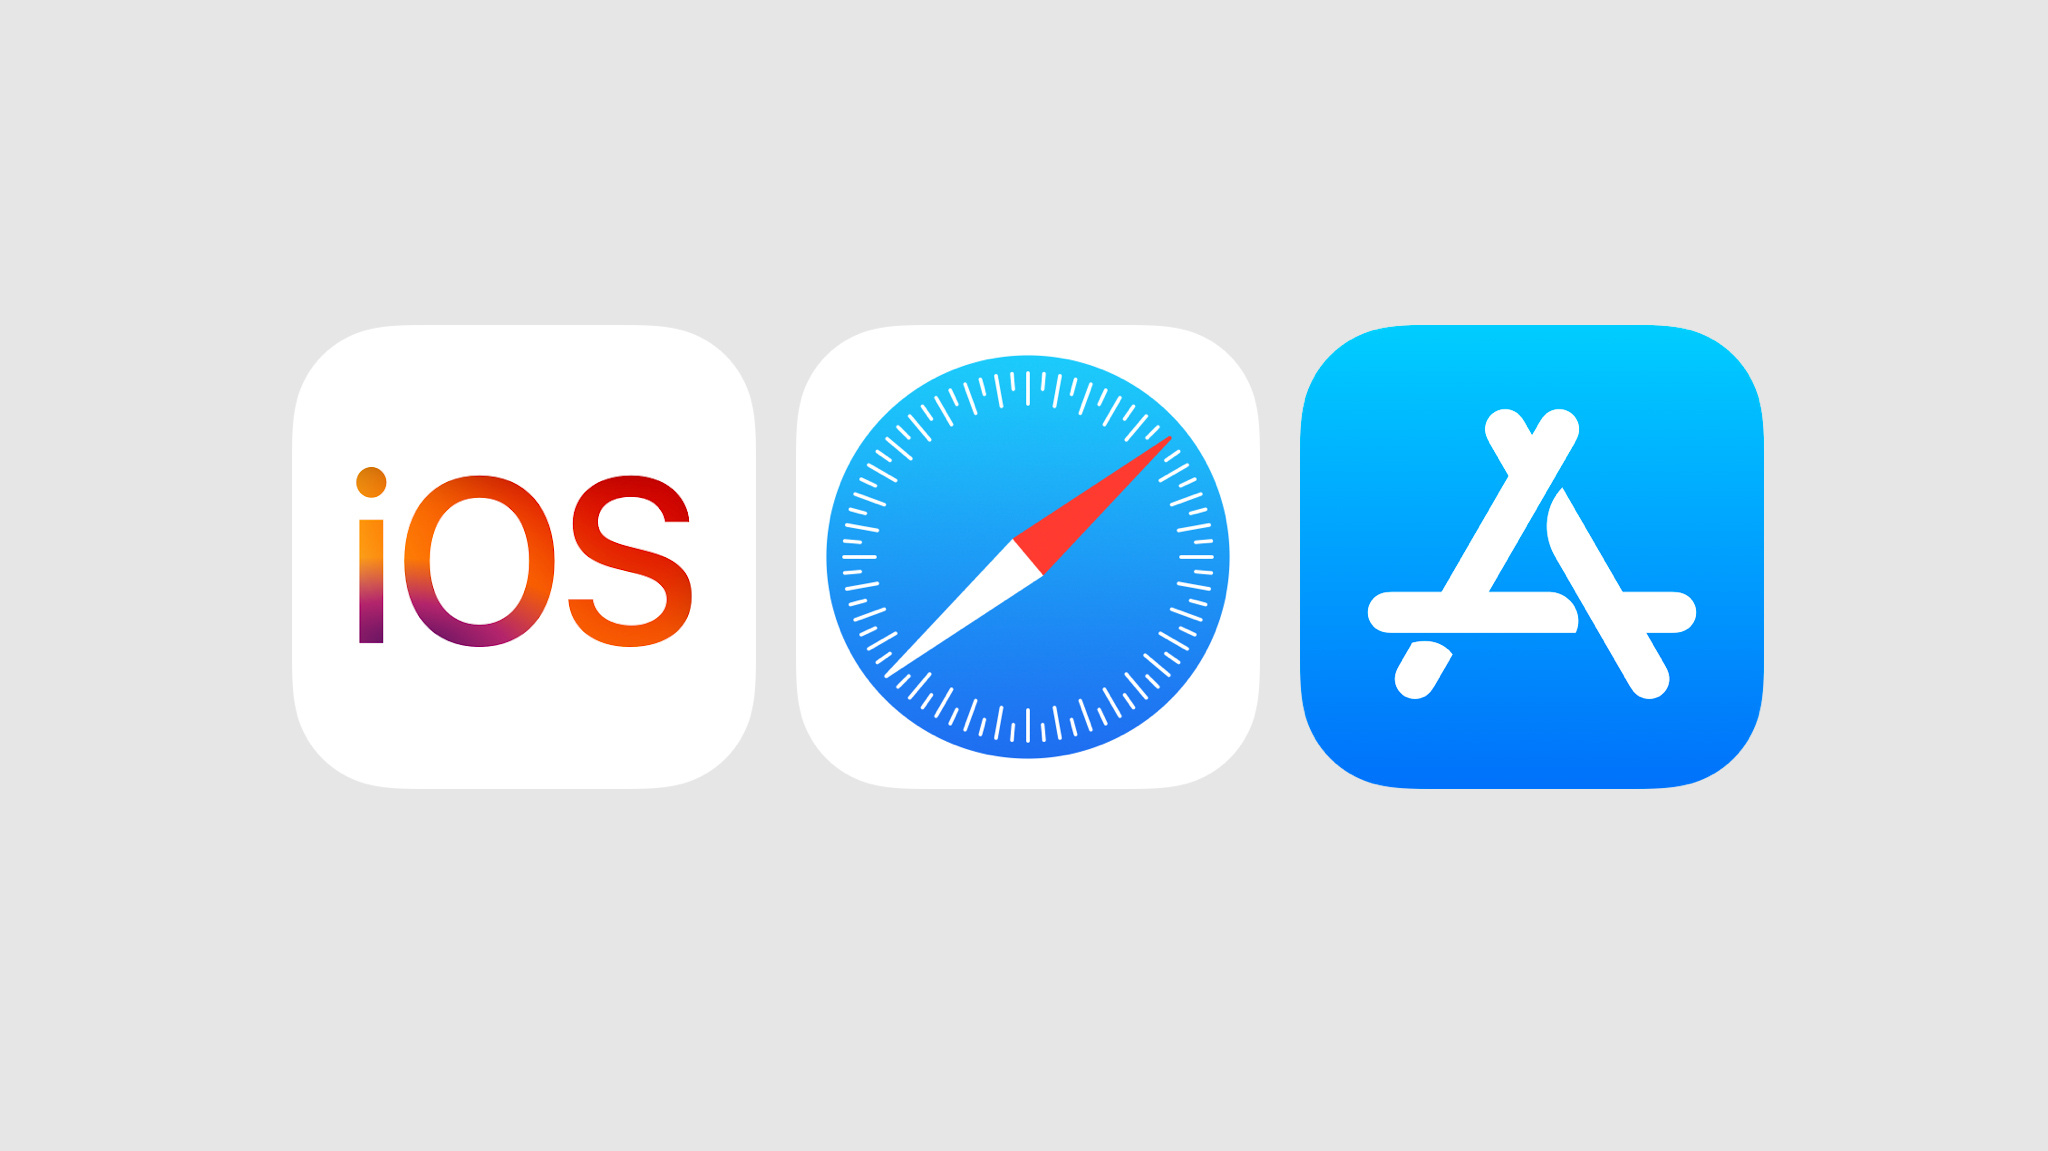 浅灰色背景衬托下的 iOS、Safari 浏览器和 App Store 图标。